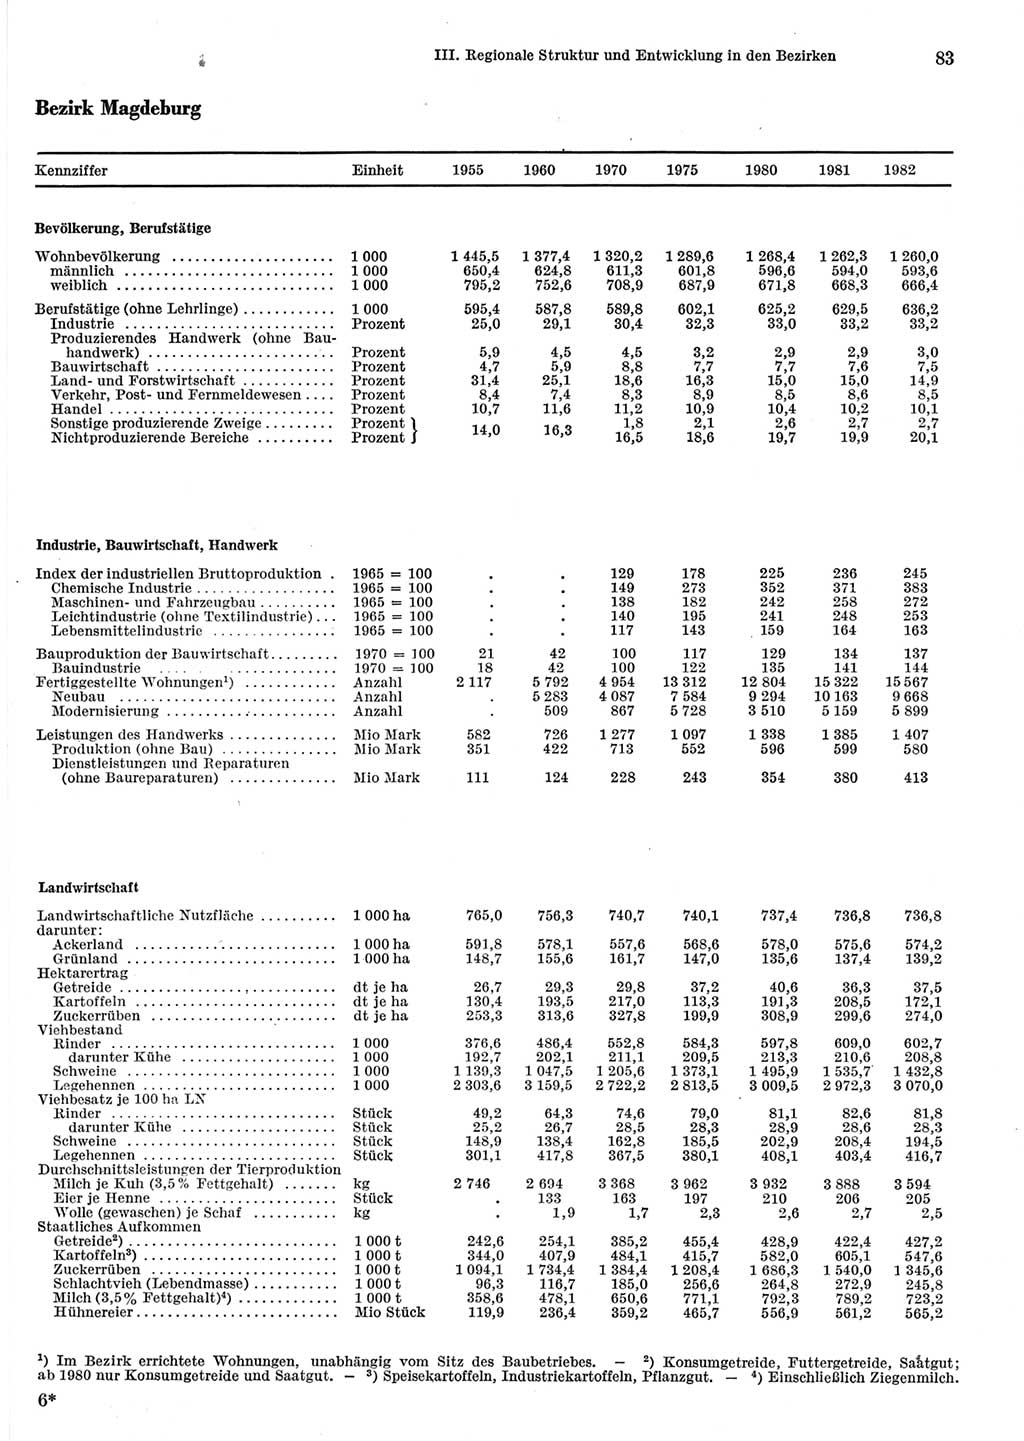 Statistisches Jahrbuch der Deutschen Demokratischen Republik (DDR) 1983, Seite 83 (Stat. Jb. DDR 1983, S. 83)